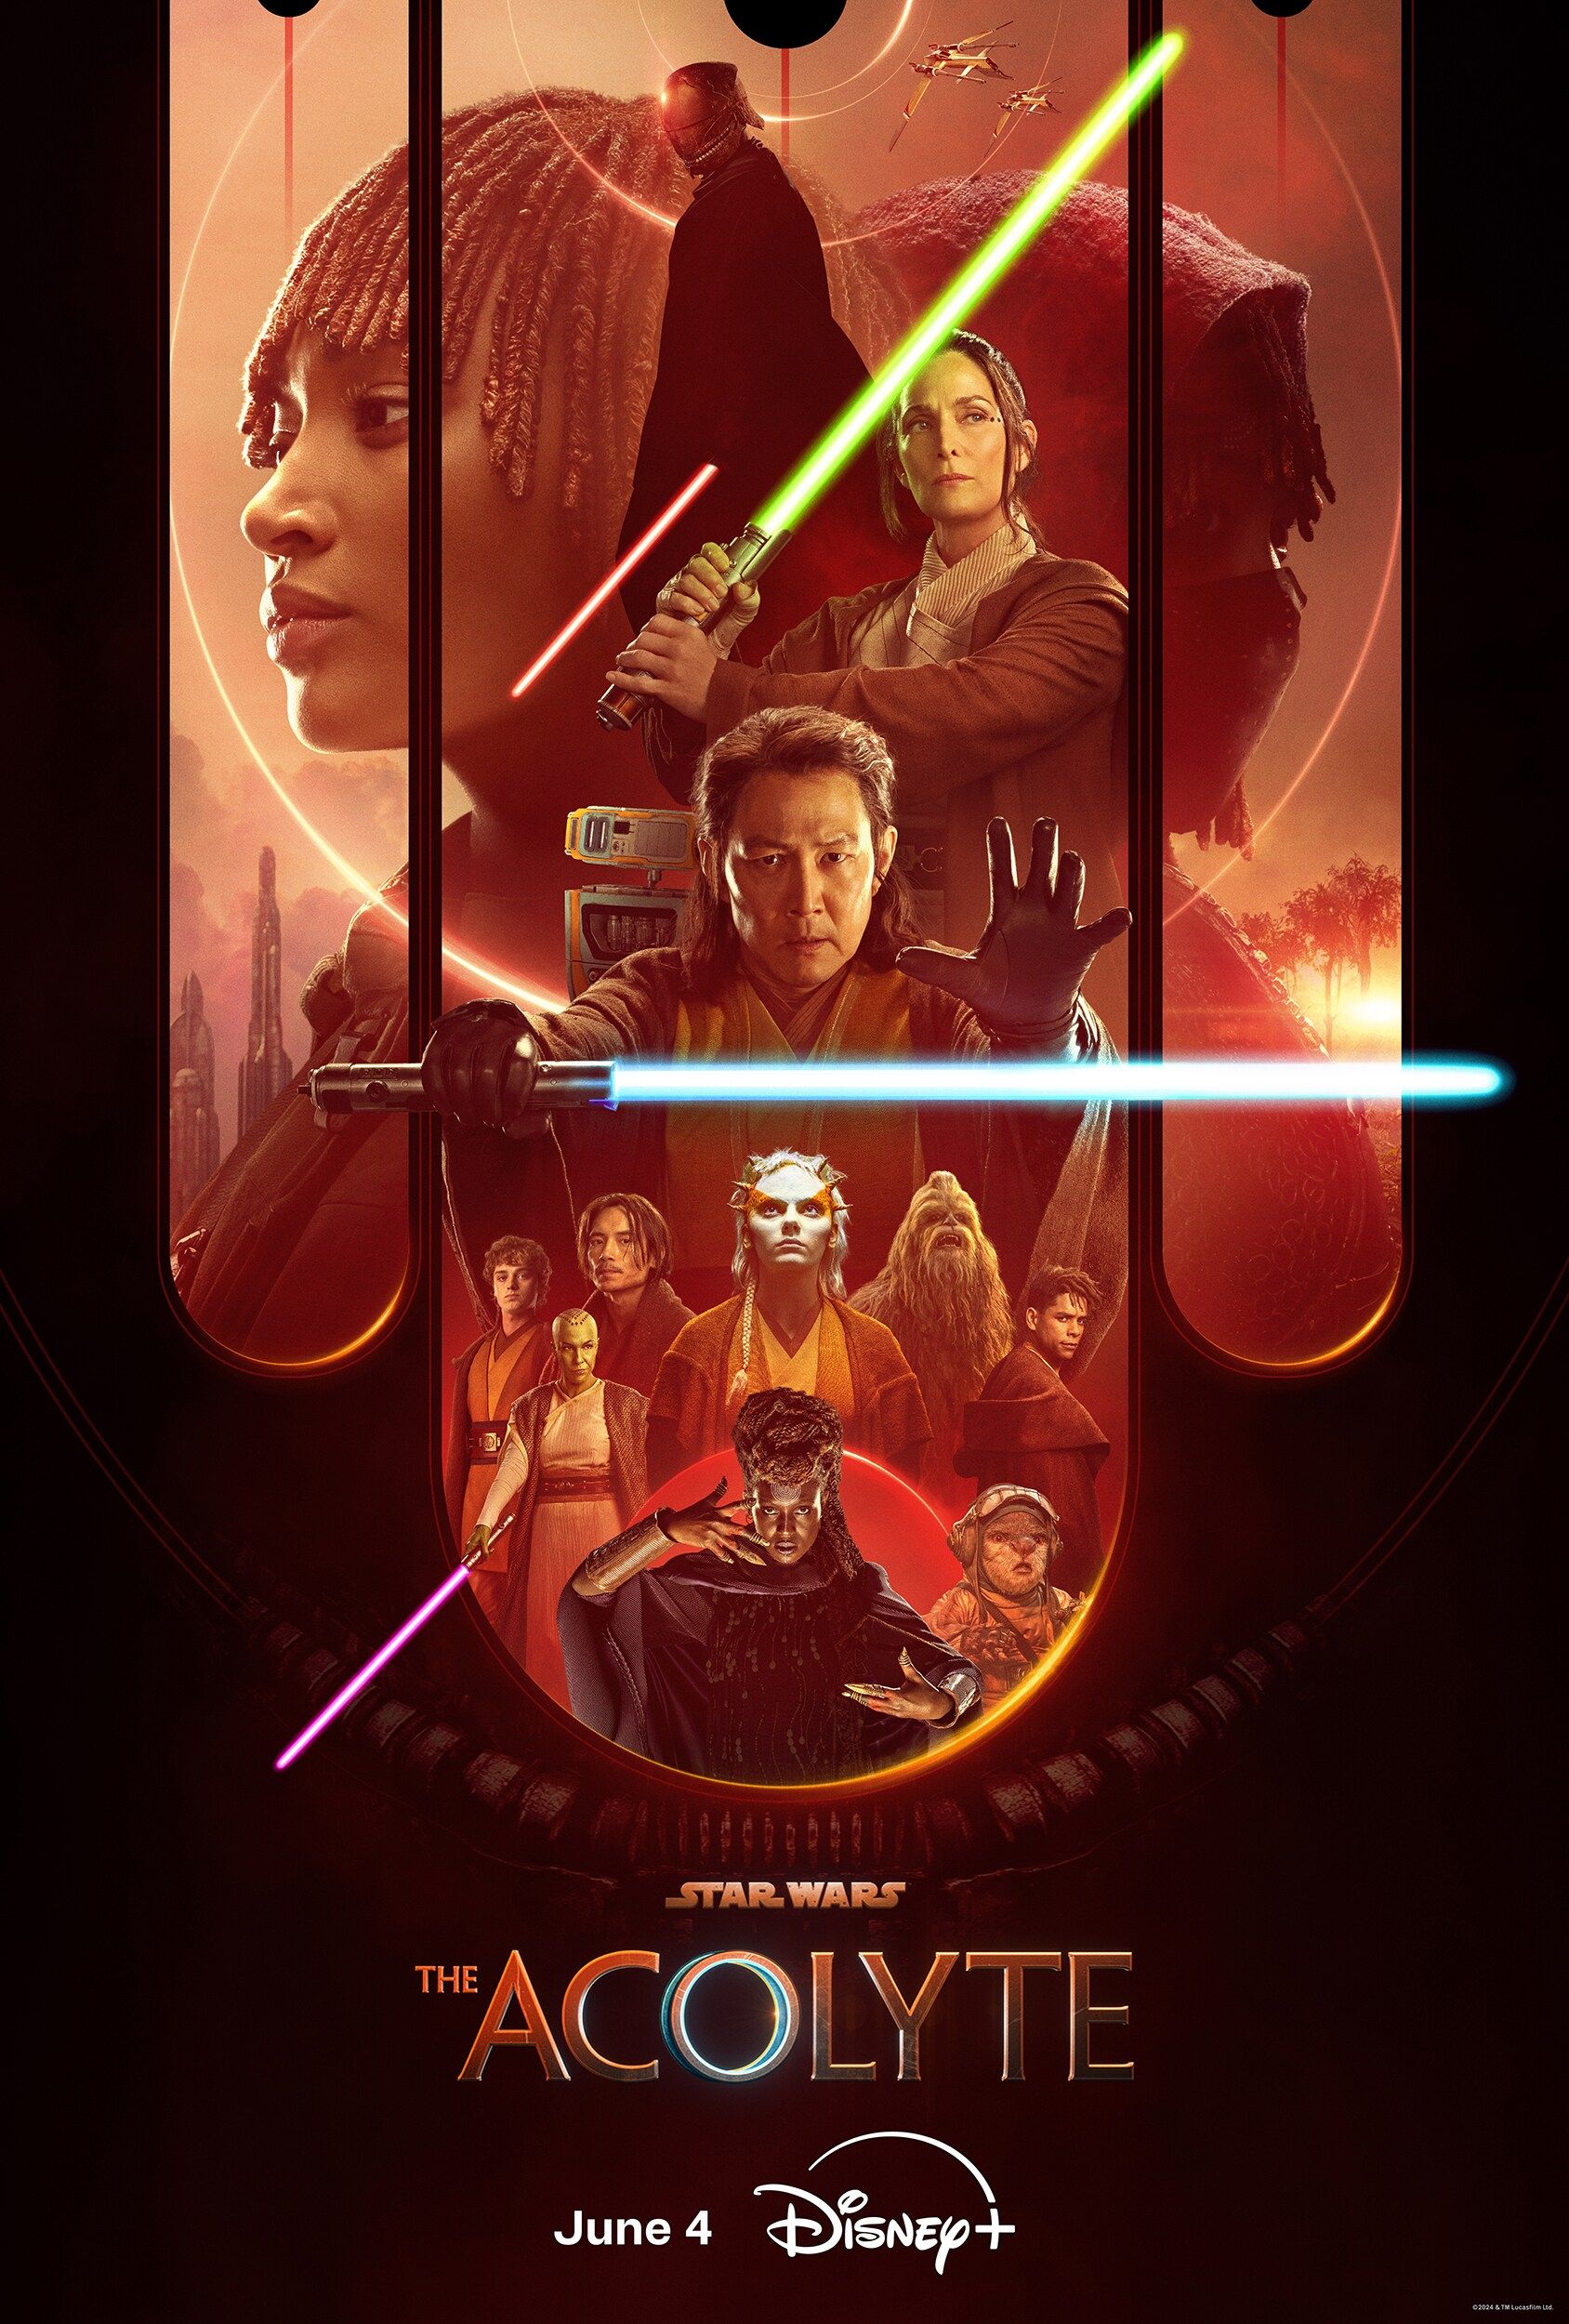 Poster Acolyte yang Menampilkan Jedi Order, Mae, dan Sith Lord yang Memegang Lightsaber